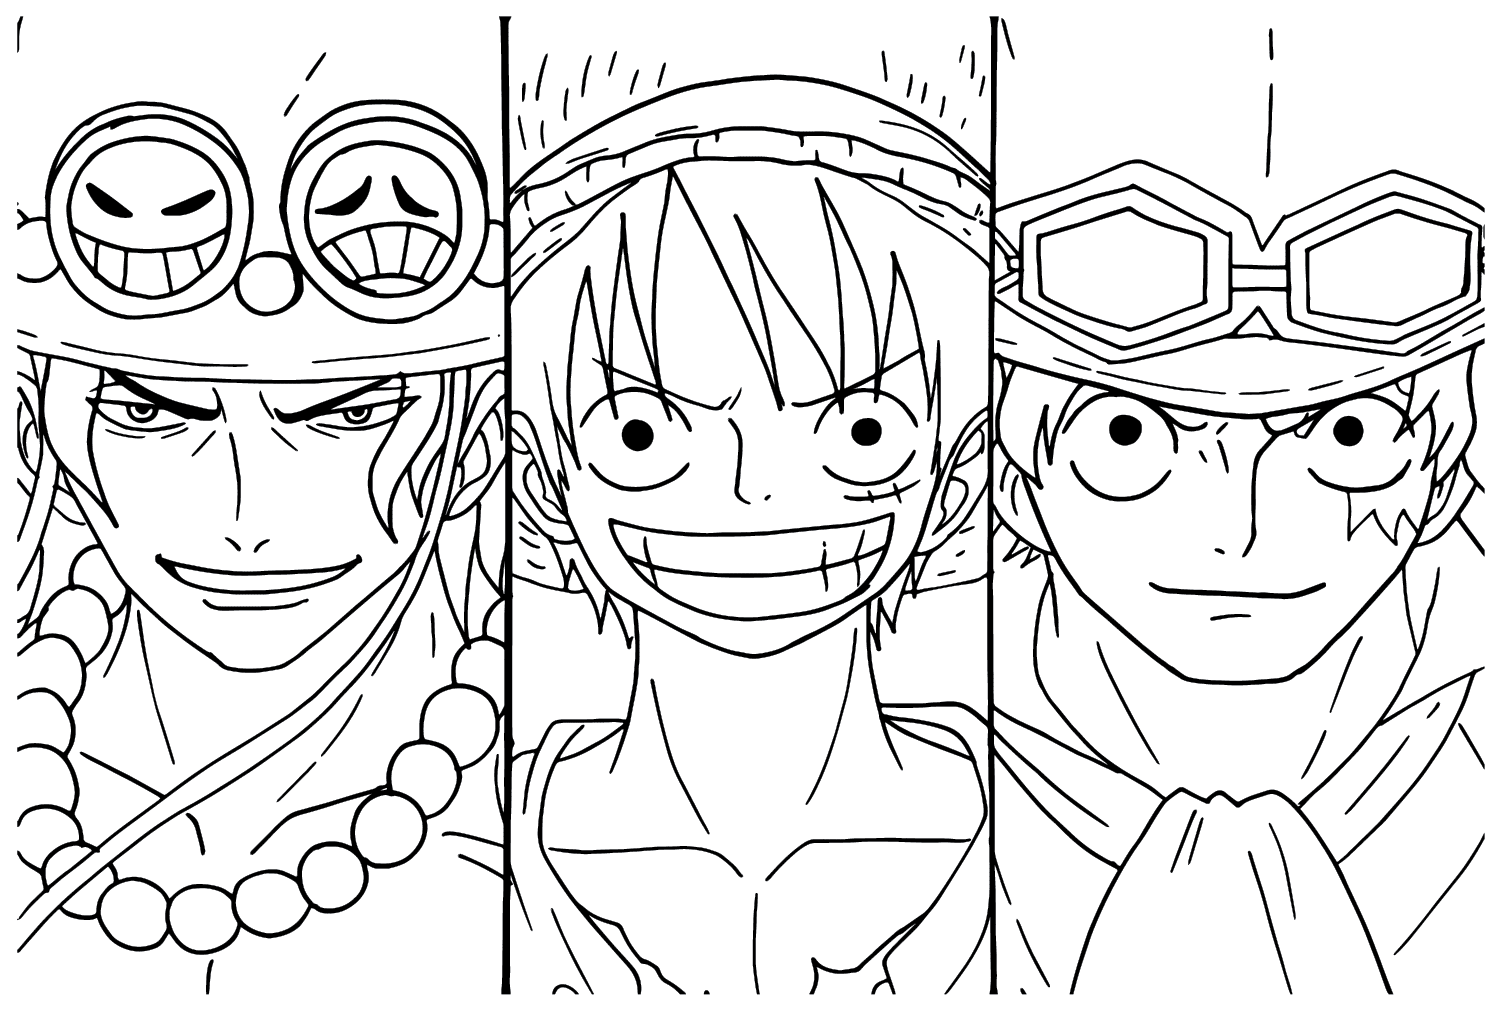 Ace, Luffy, Sabo kleurplaat van Luffy